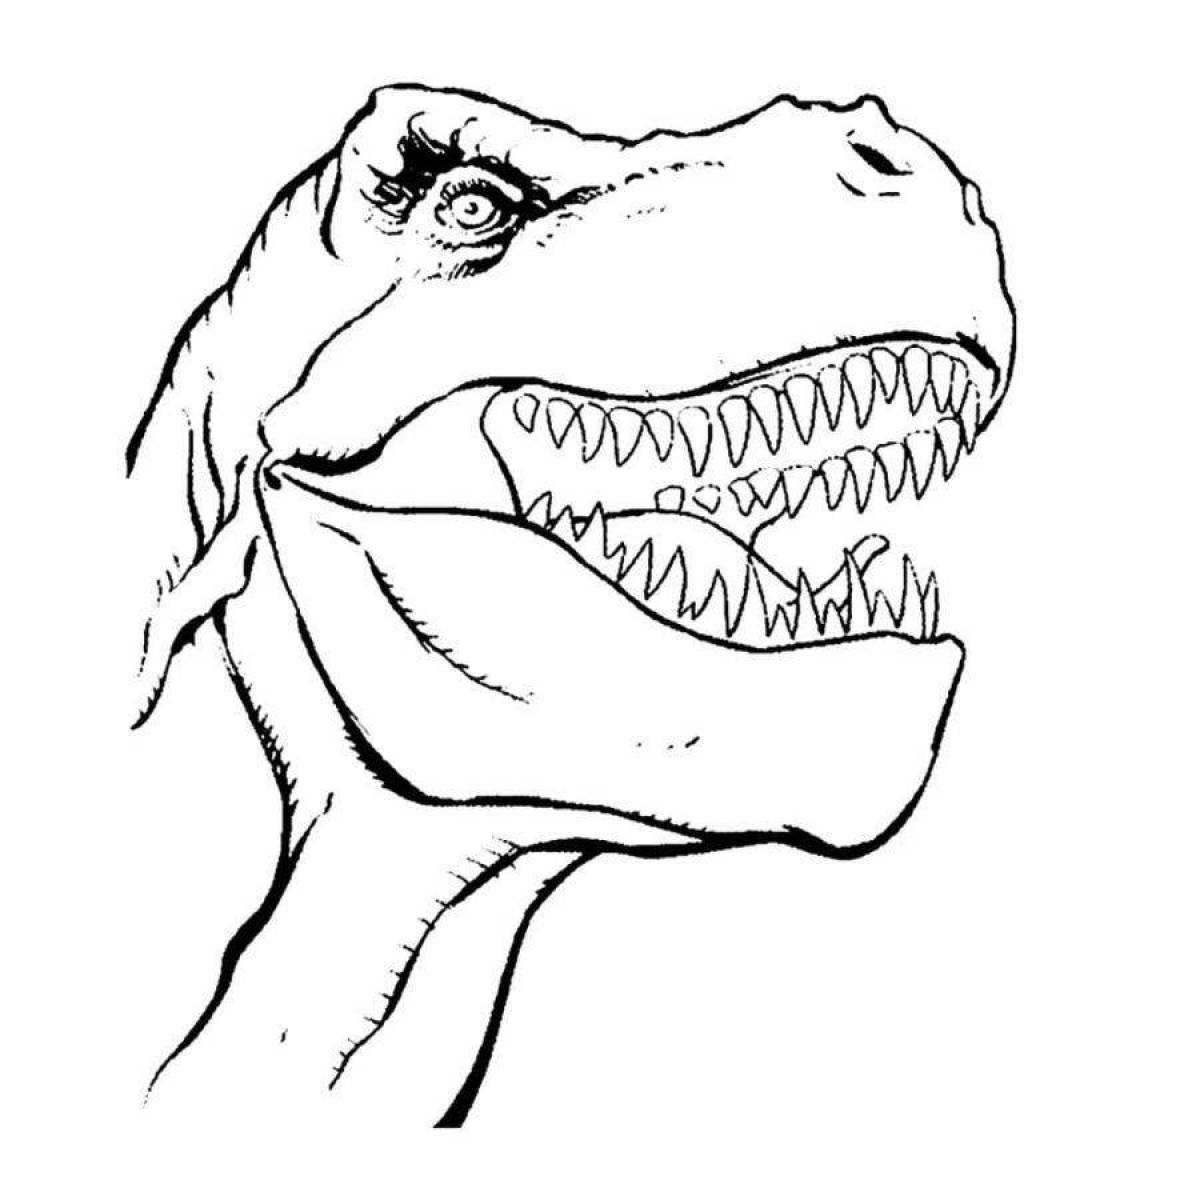 Tirex nice dinosaur coloring page